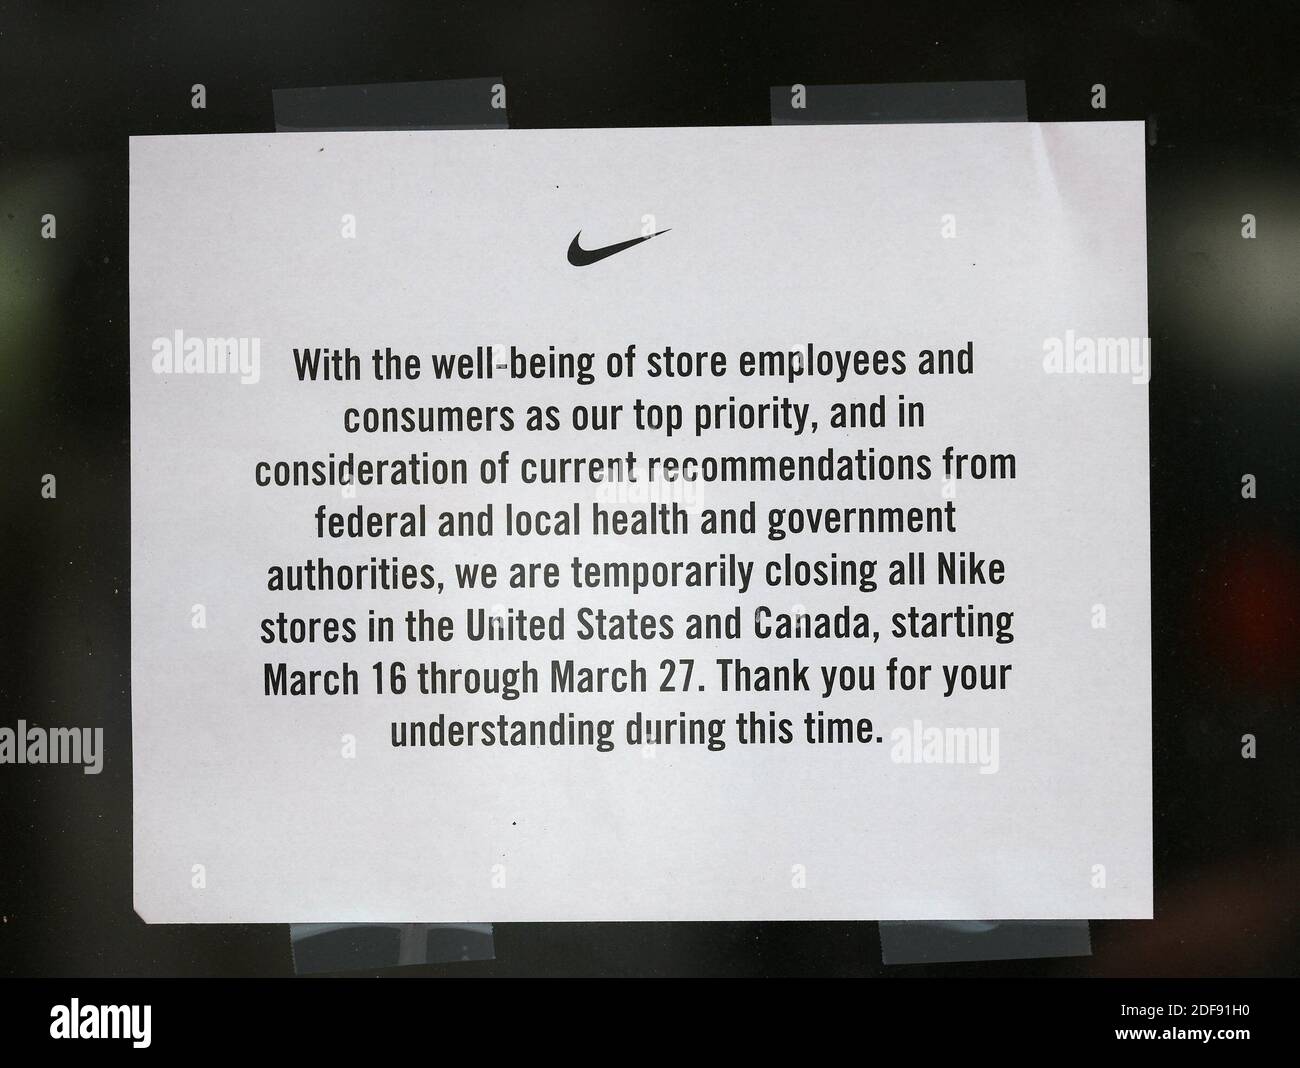 PAS DE FILM, PAS DE VIDÉO, PAS de télévision, PAS DE DOCUMENTAIRE - le  magasin Nike Lincoln Rd affiche un avis de fermeture car les politiques de  lutte contre la pandémie COVID-19